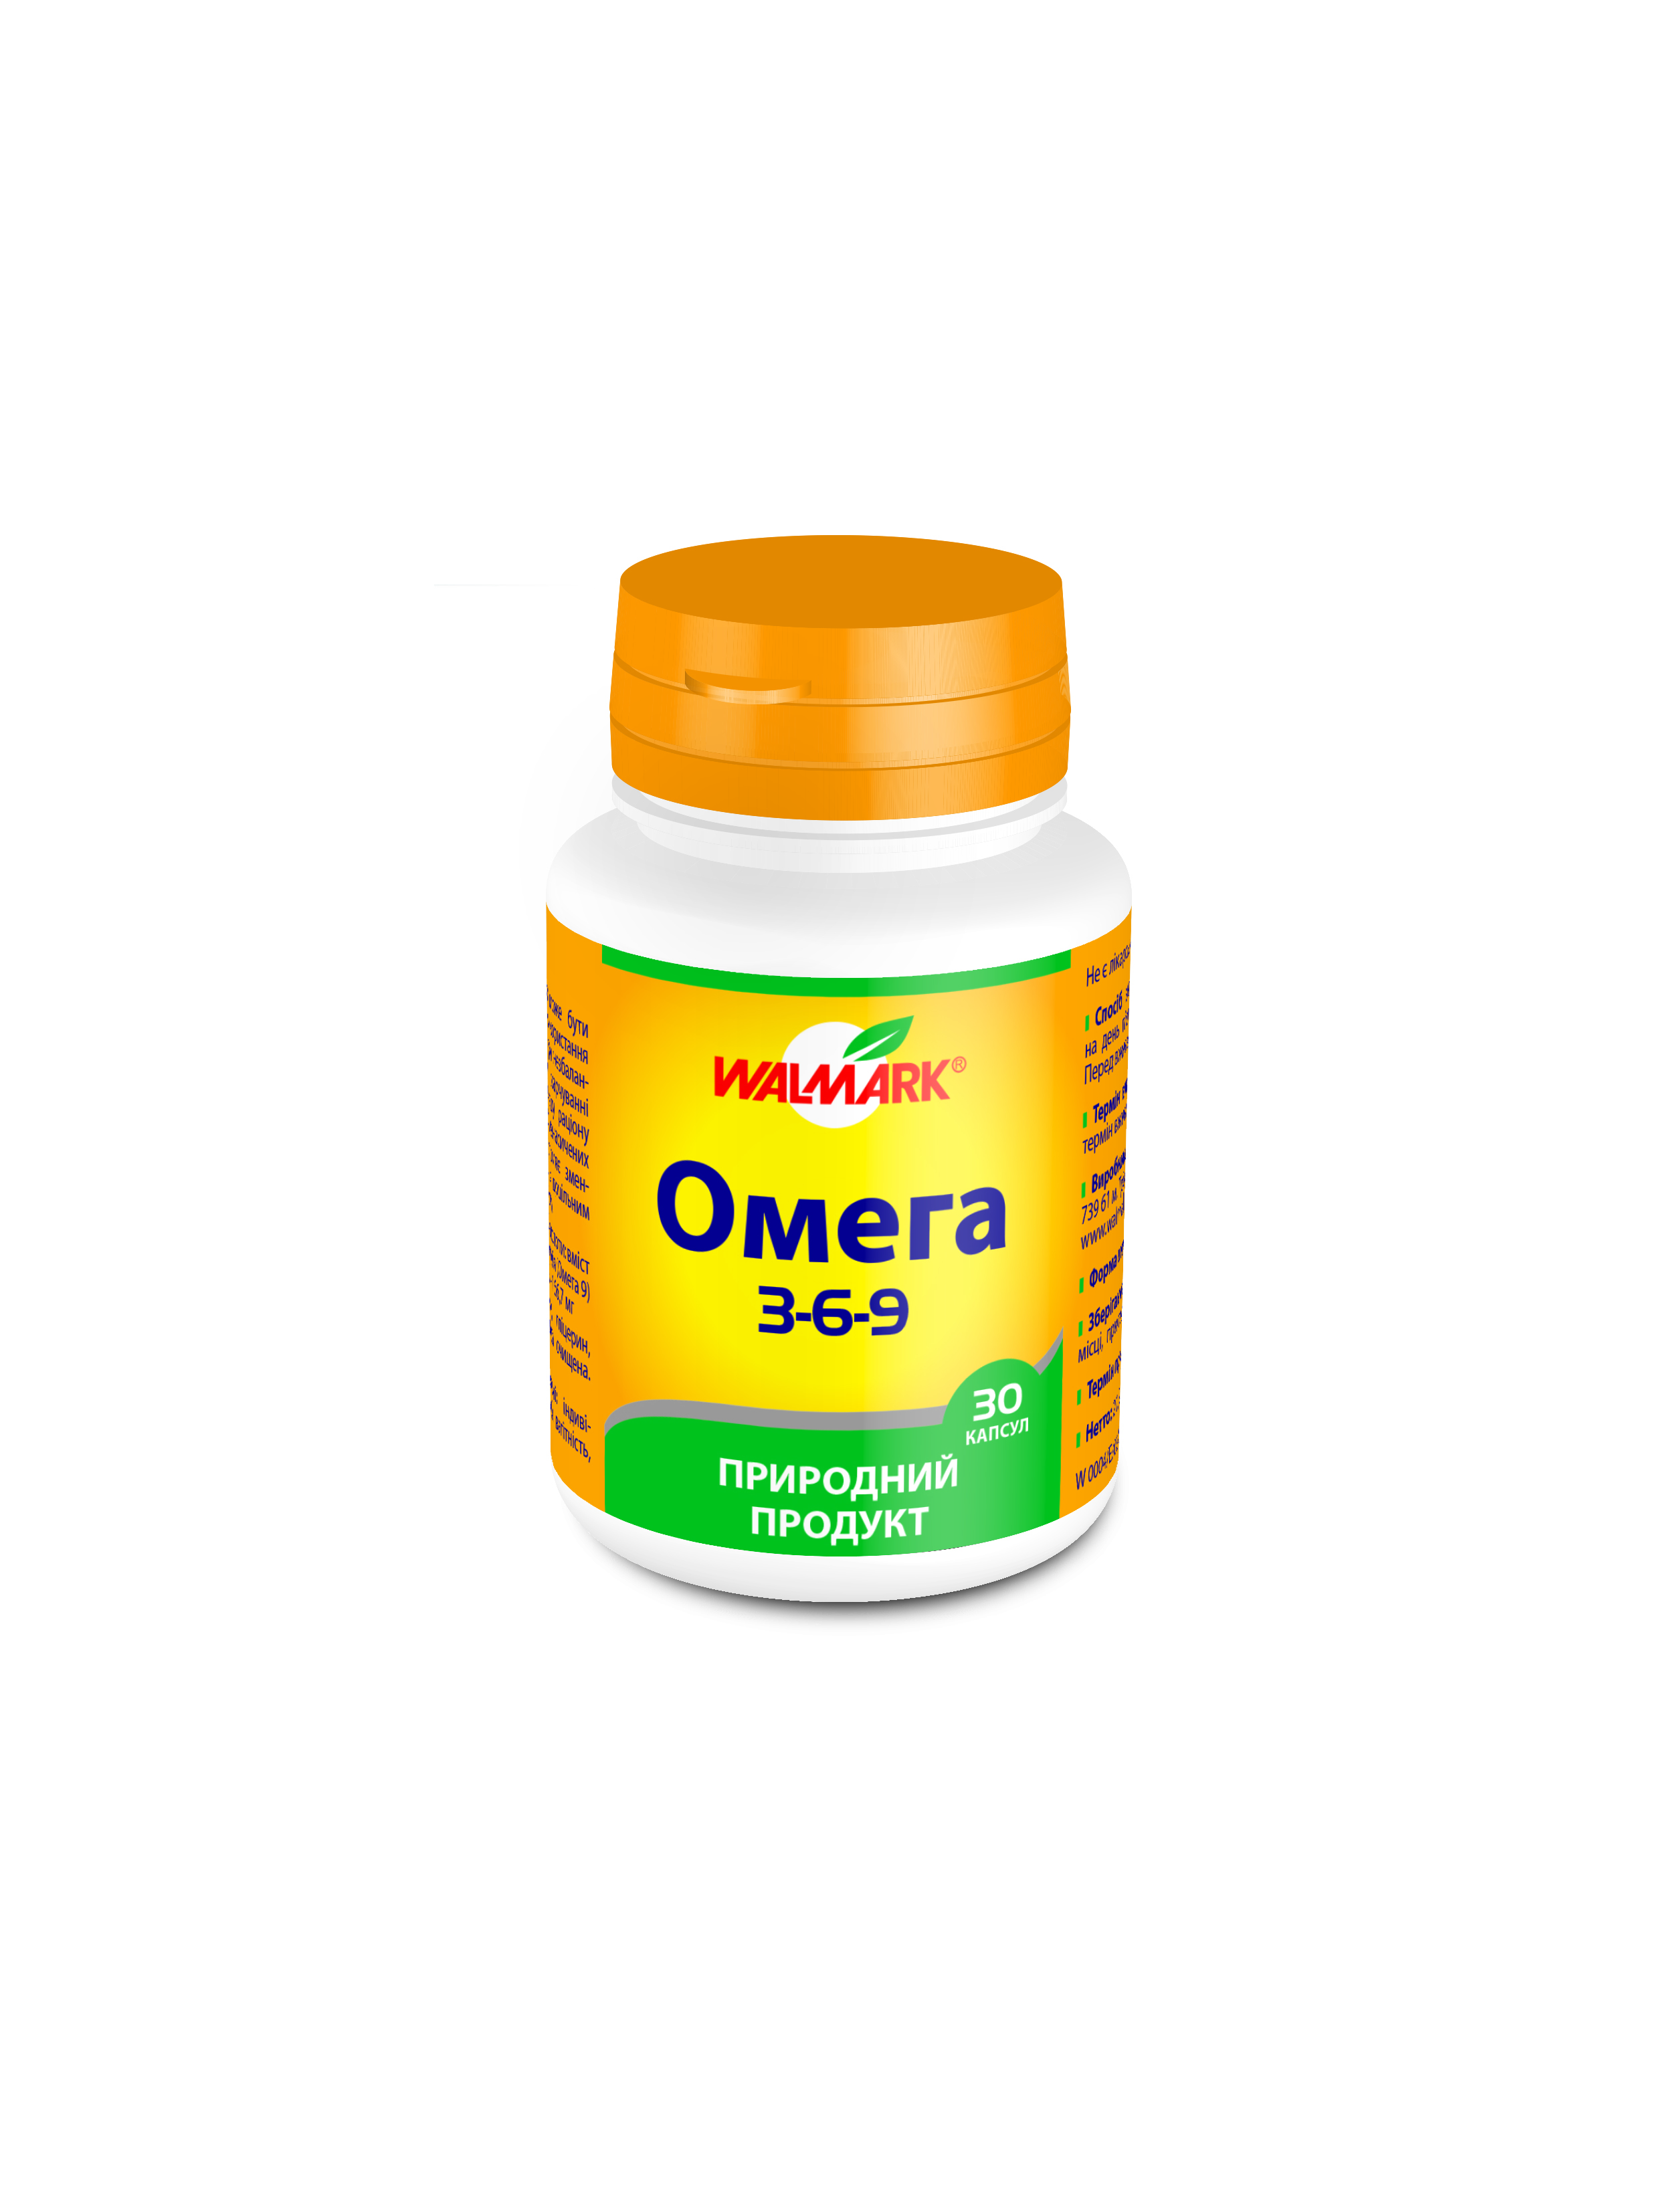 Omega 3-6-9_30_PET_UKR_3D_W0004-E-02-UKR.JPG